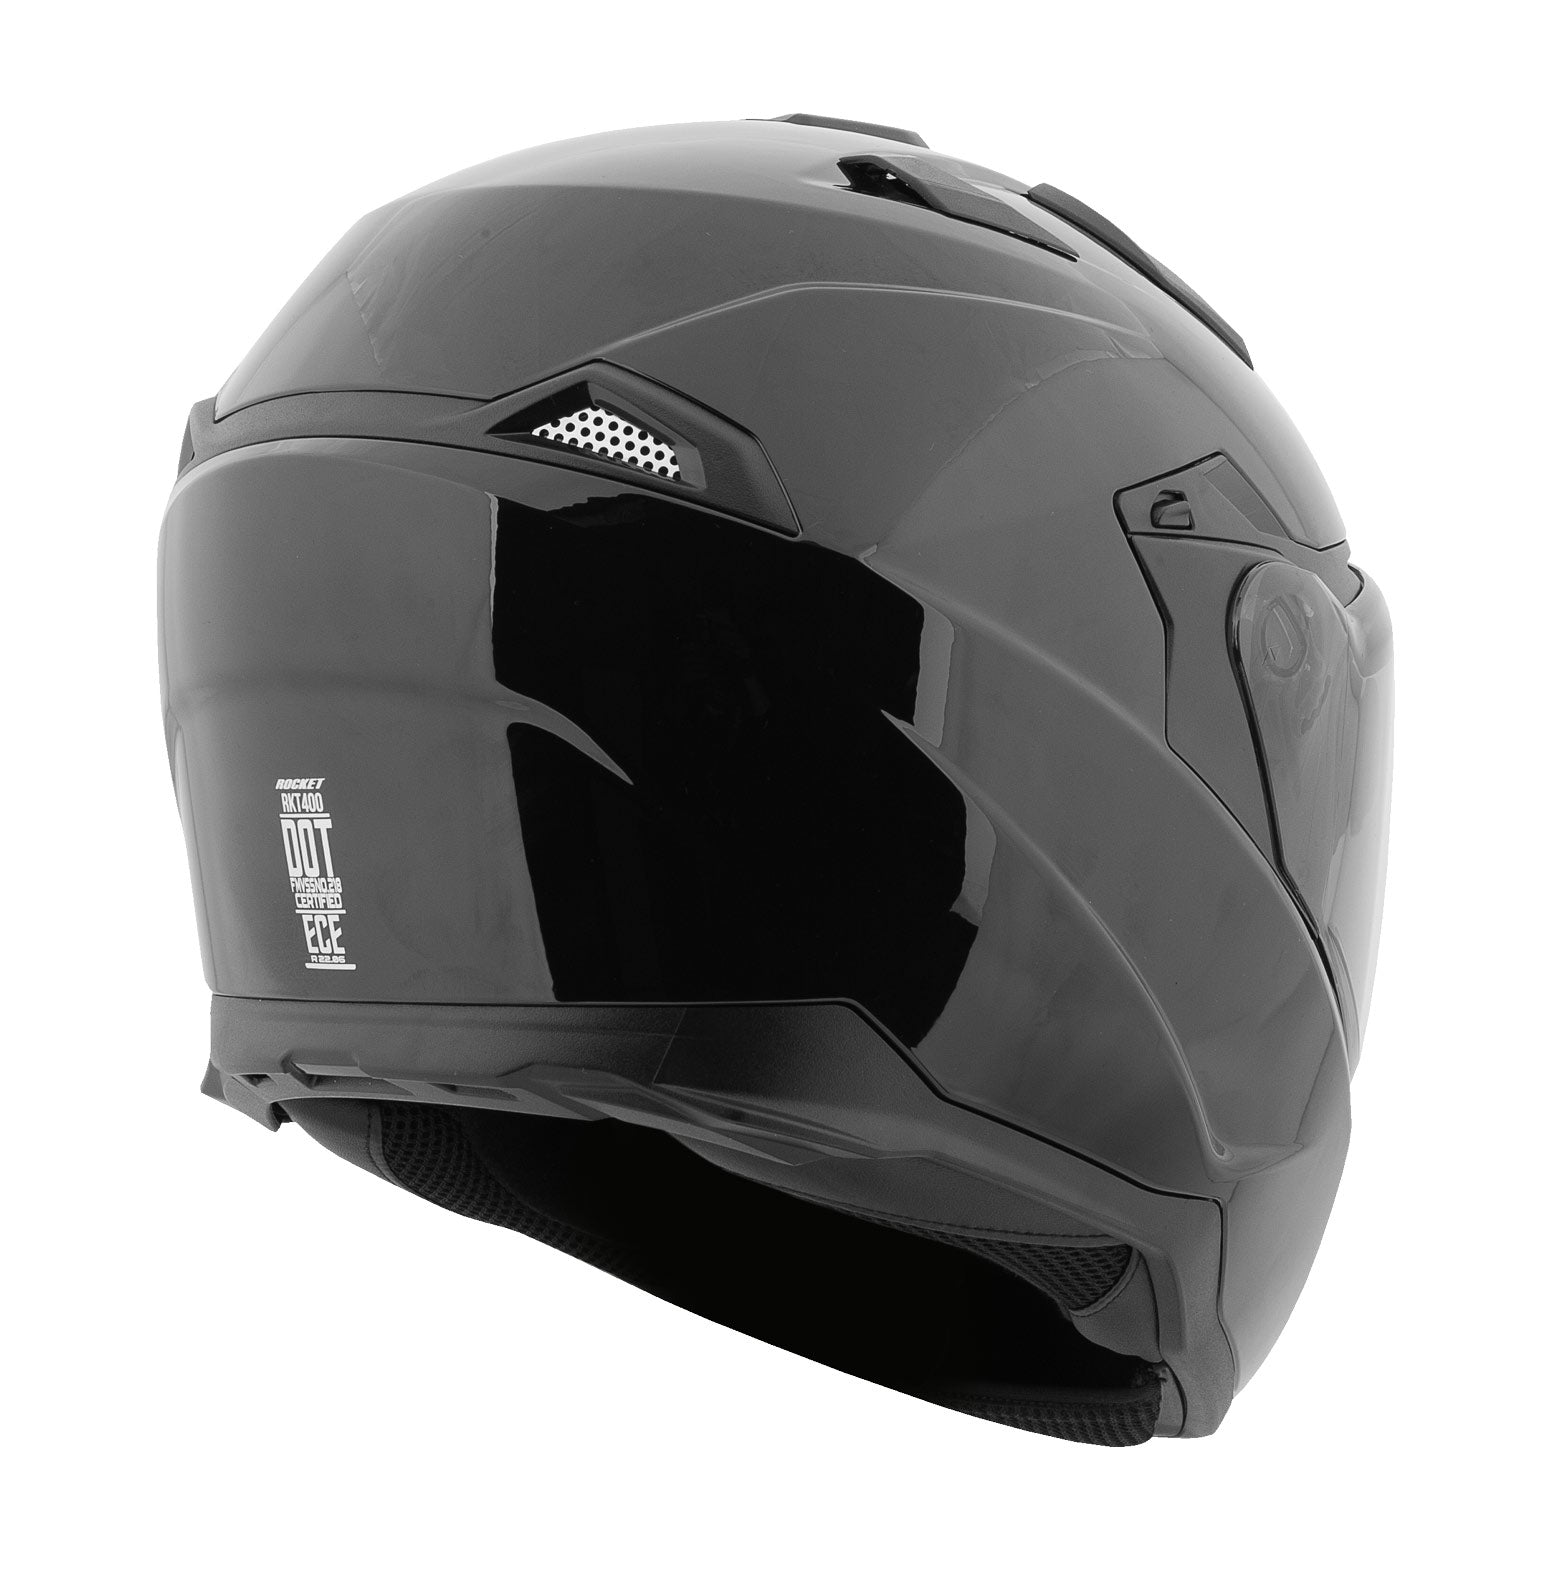 Joe Rocket Canada® RKT-400 Series Motorcycle Helmet